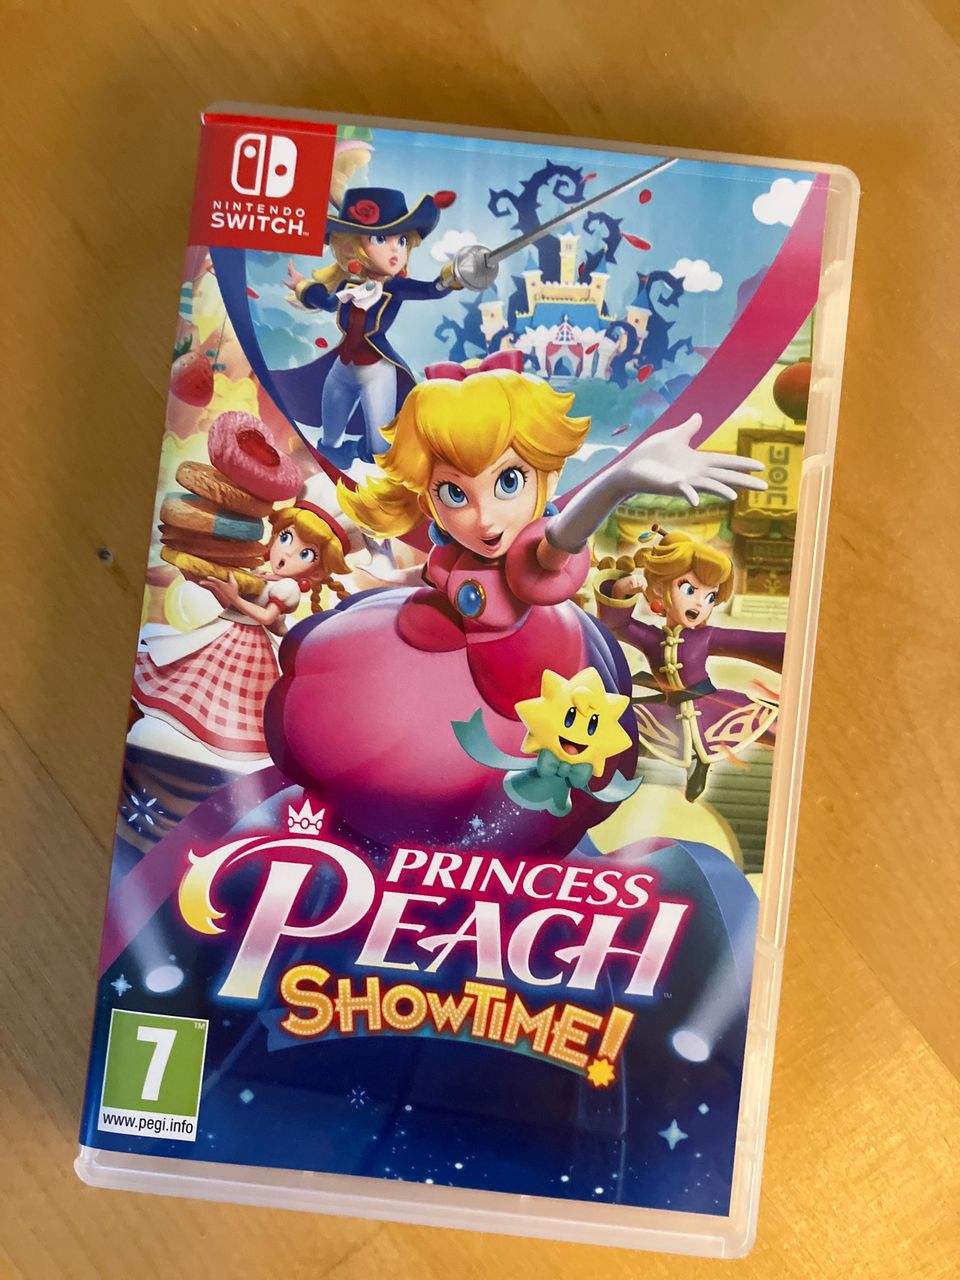 Princess Peach Showtime! peli Nintendo switch